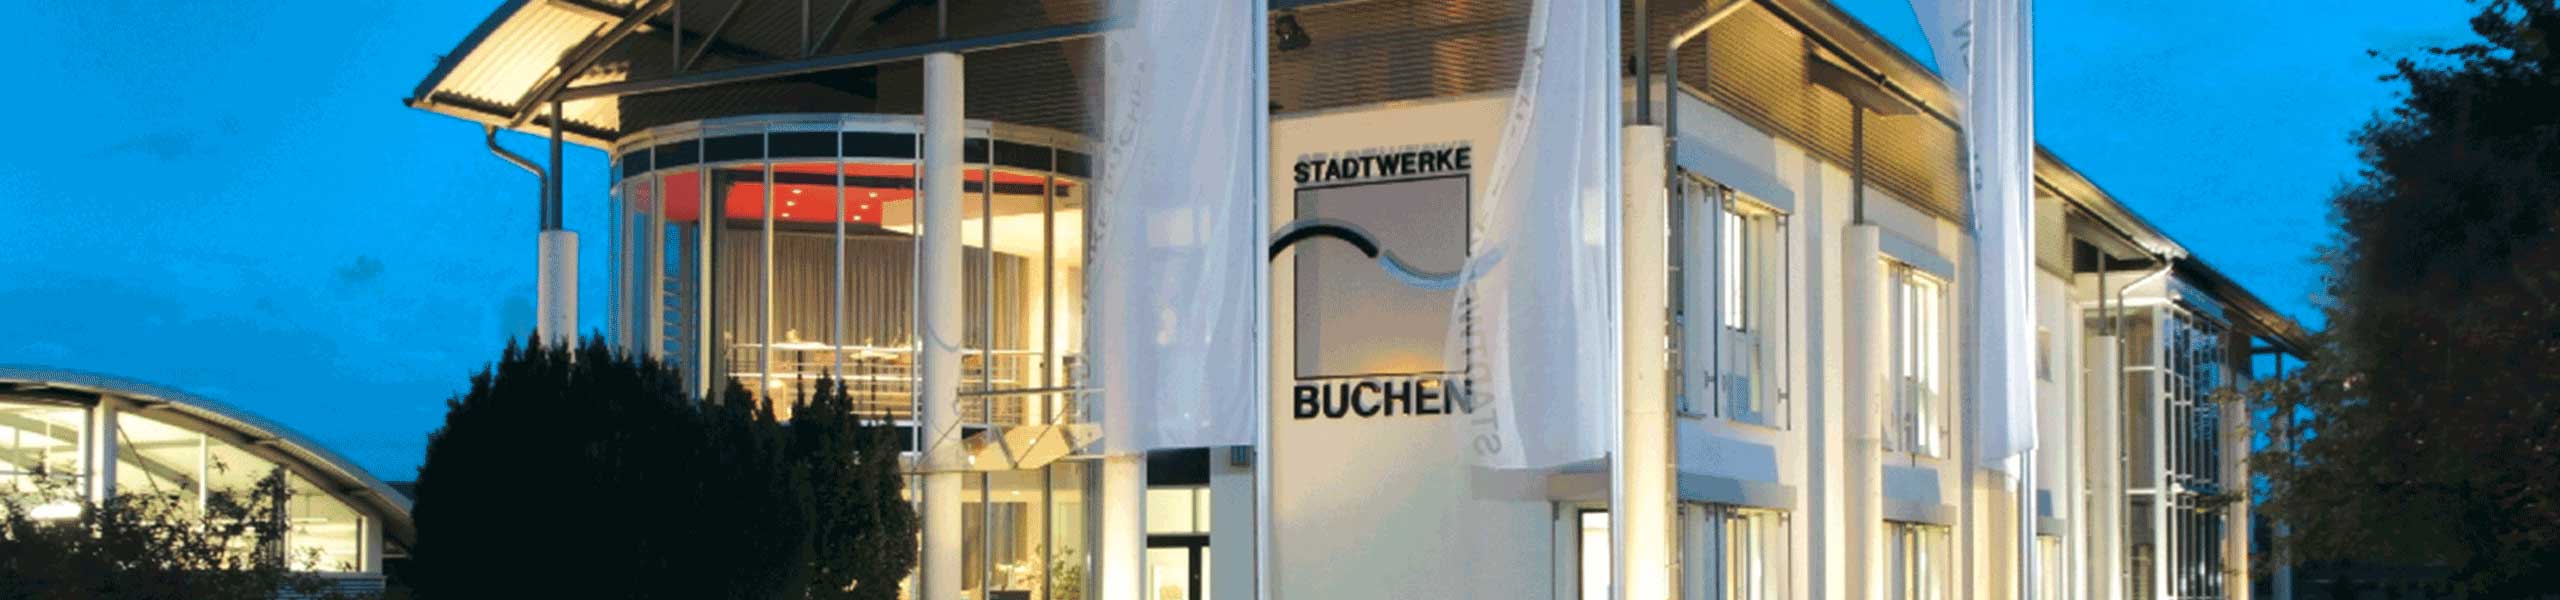 Stadtwerke Buchen GmbH & Co KG - Ihr Versorger vor Ort - Kontakt